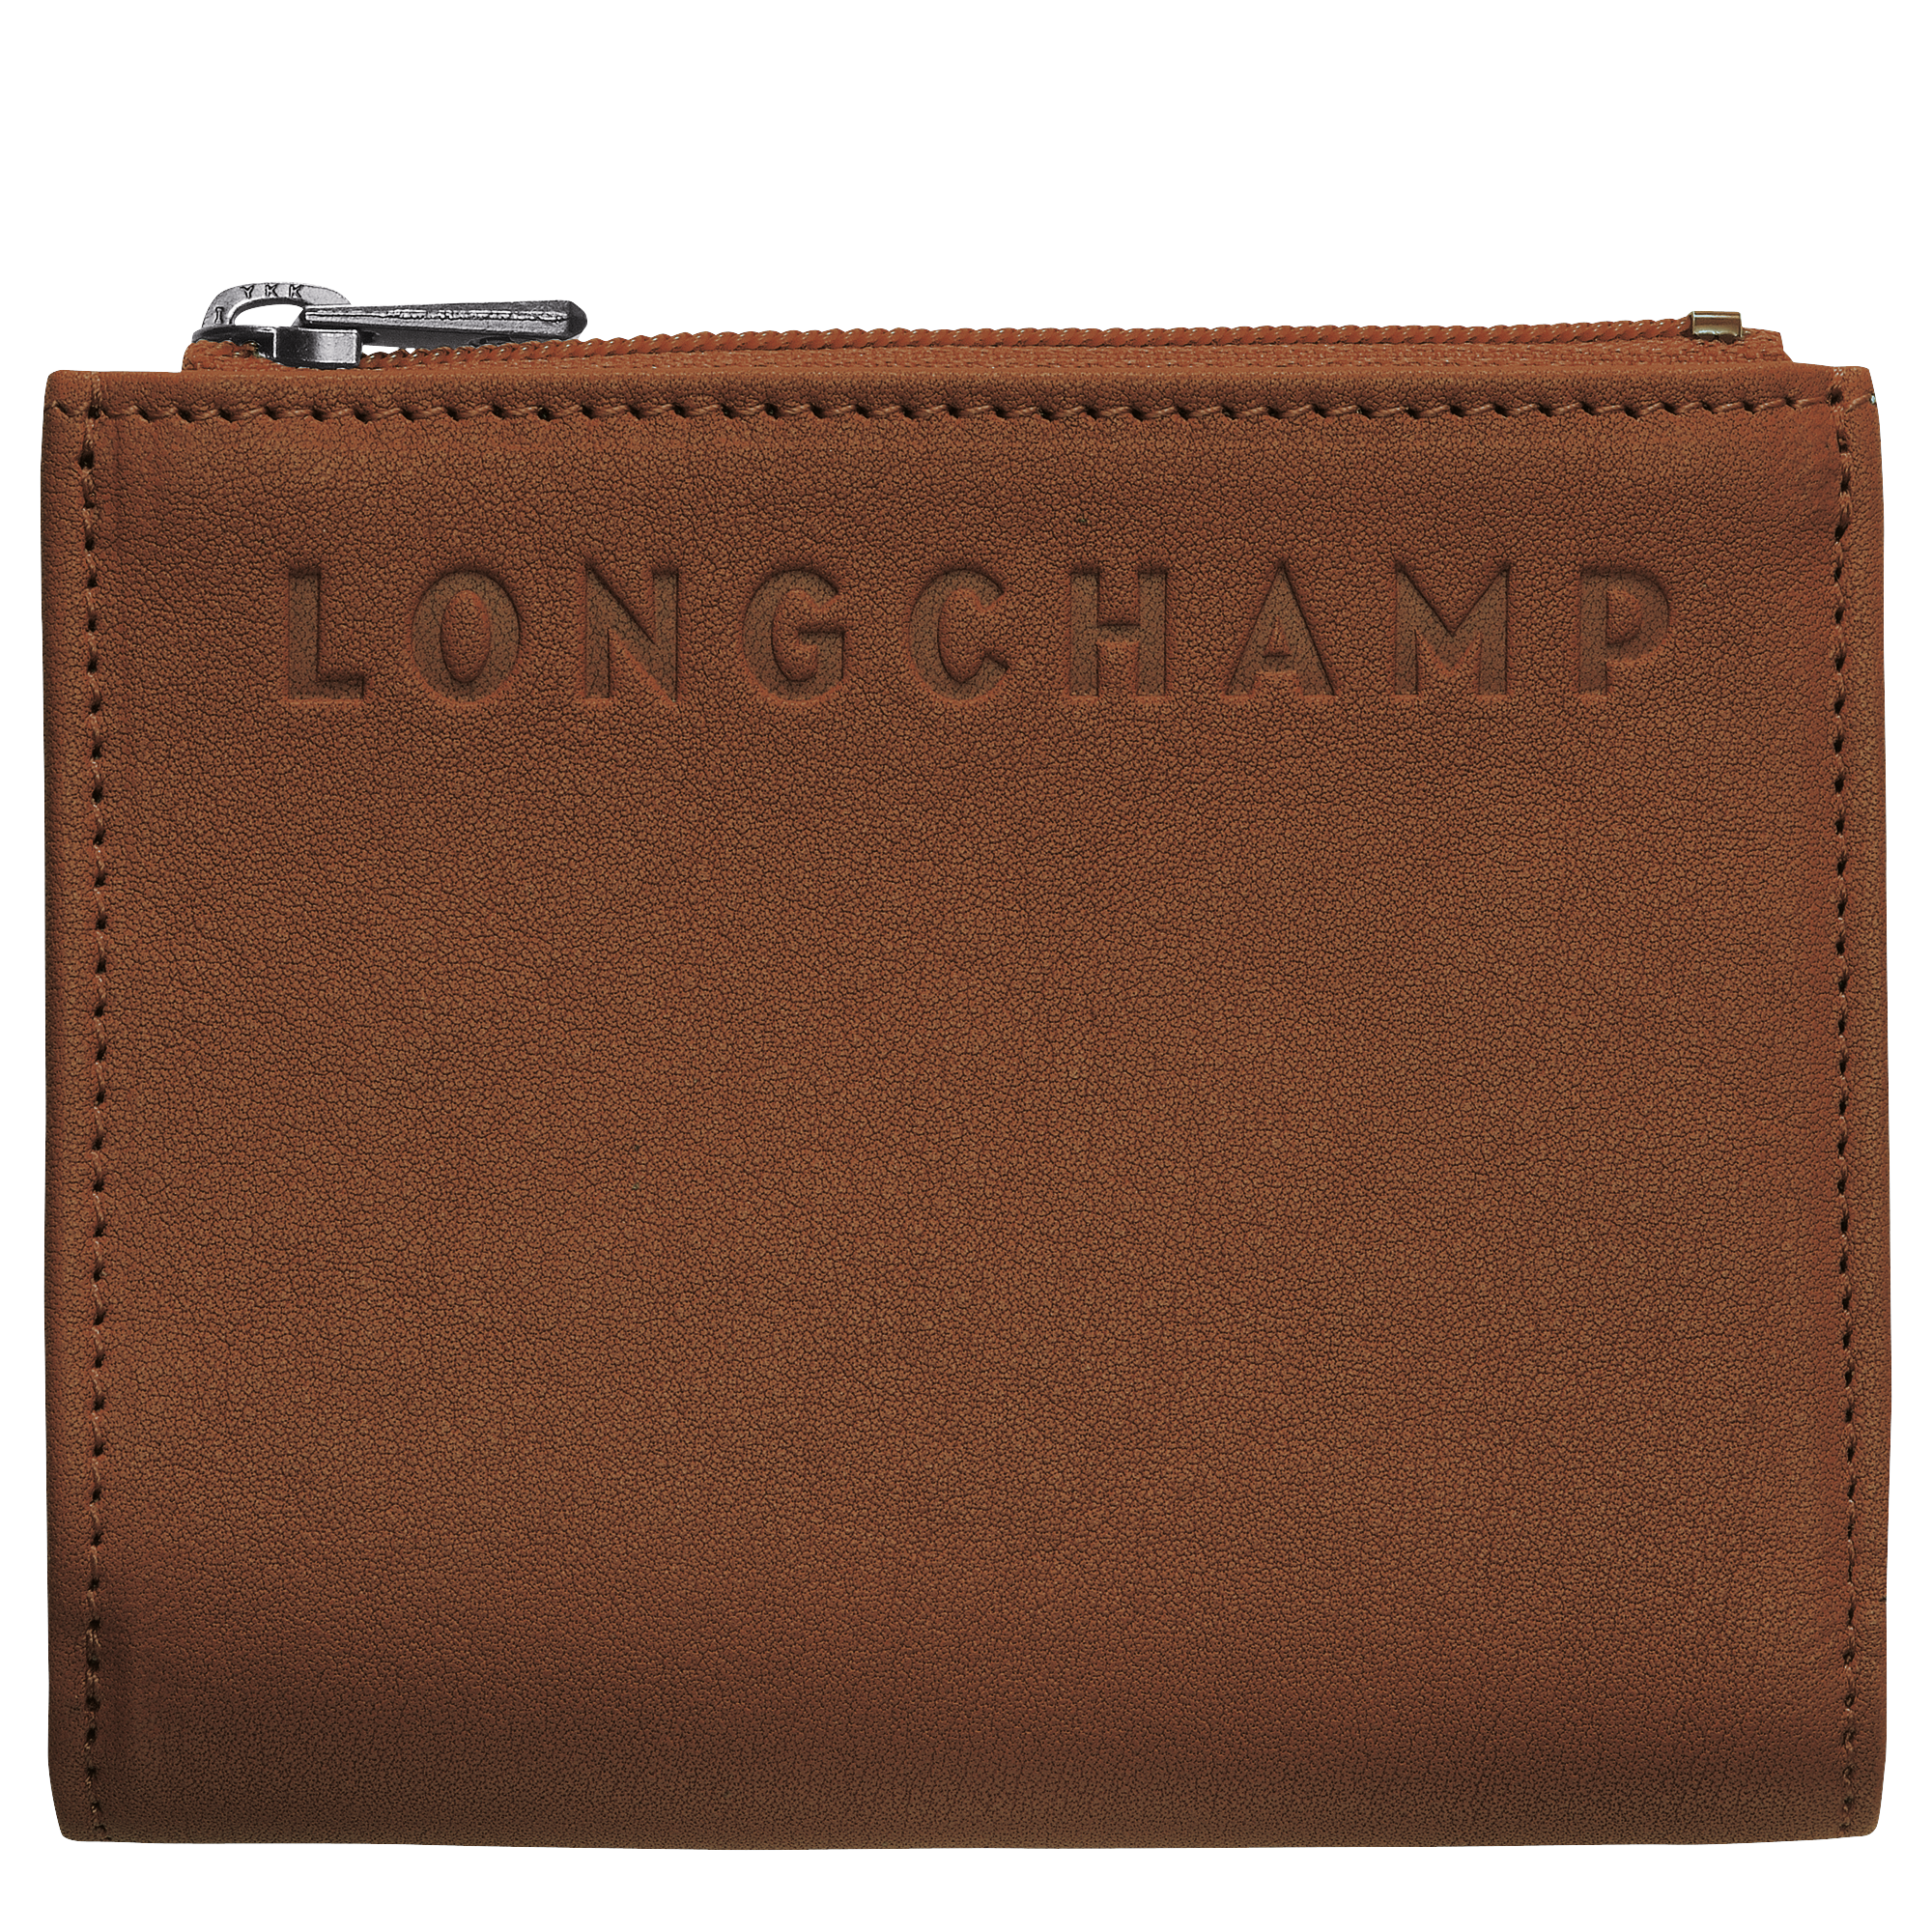 longchamps wallet men's